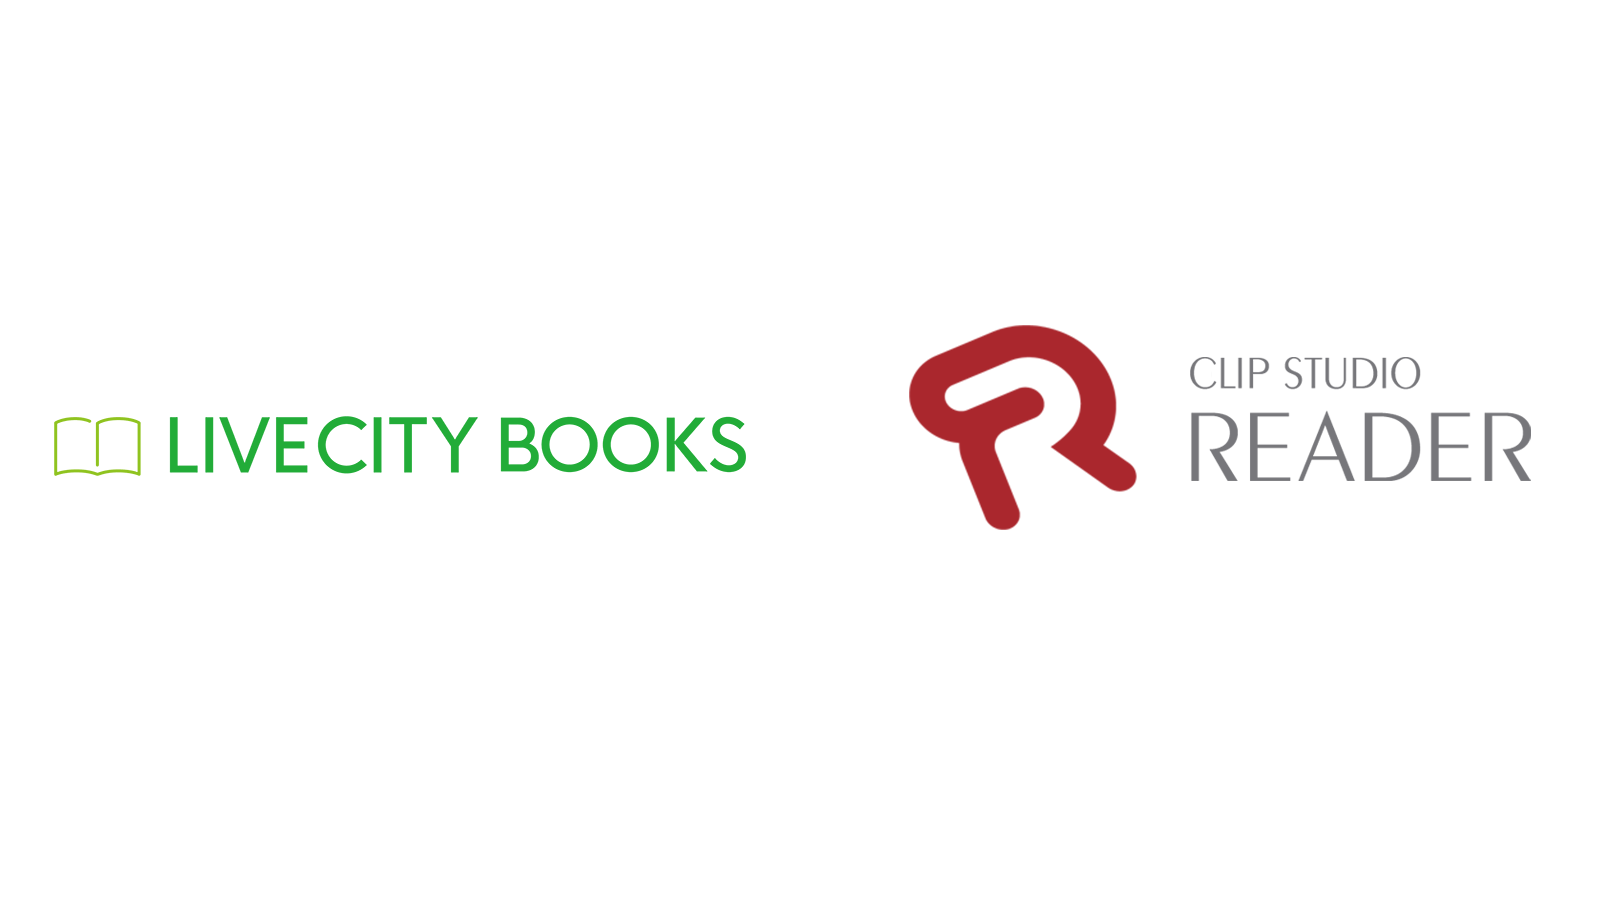 セルシスの電子書籍ビューア「CLIP STUDIO READER」がエル・エー・ビーの電子書籍サイト「LIVECITY BOOKS」に採用